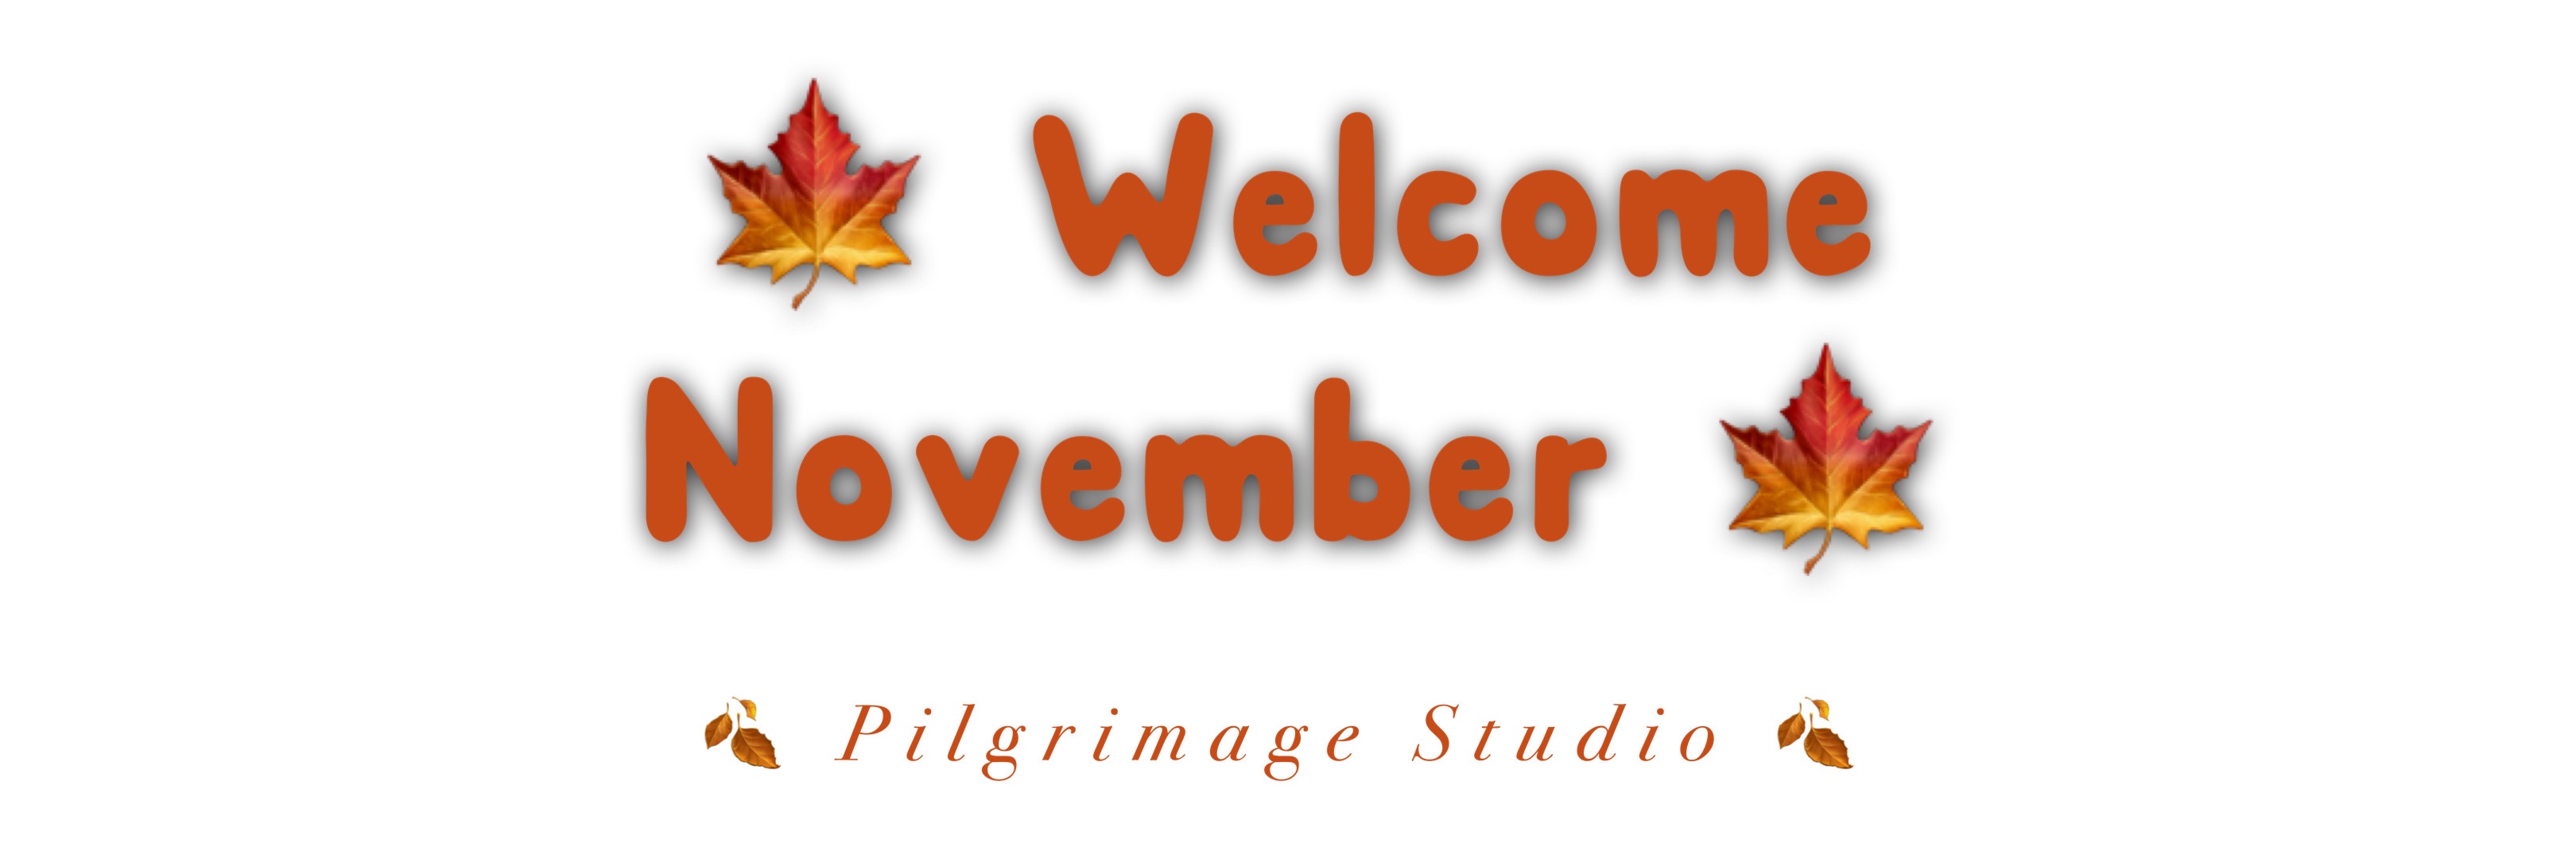 ©️ Pilgrimage Studio 